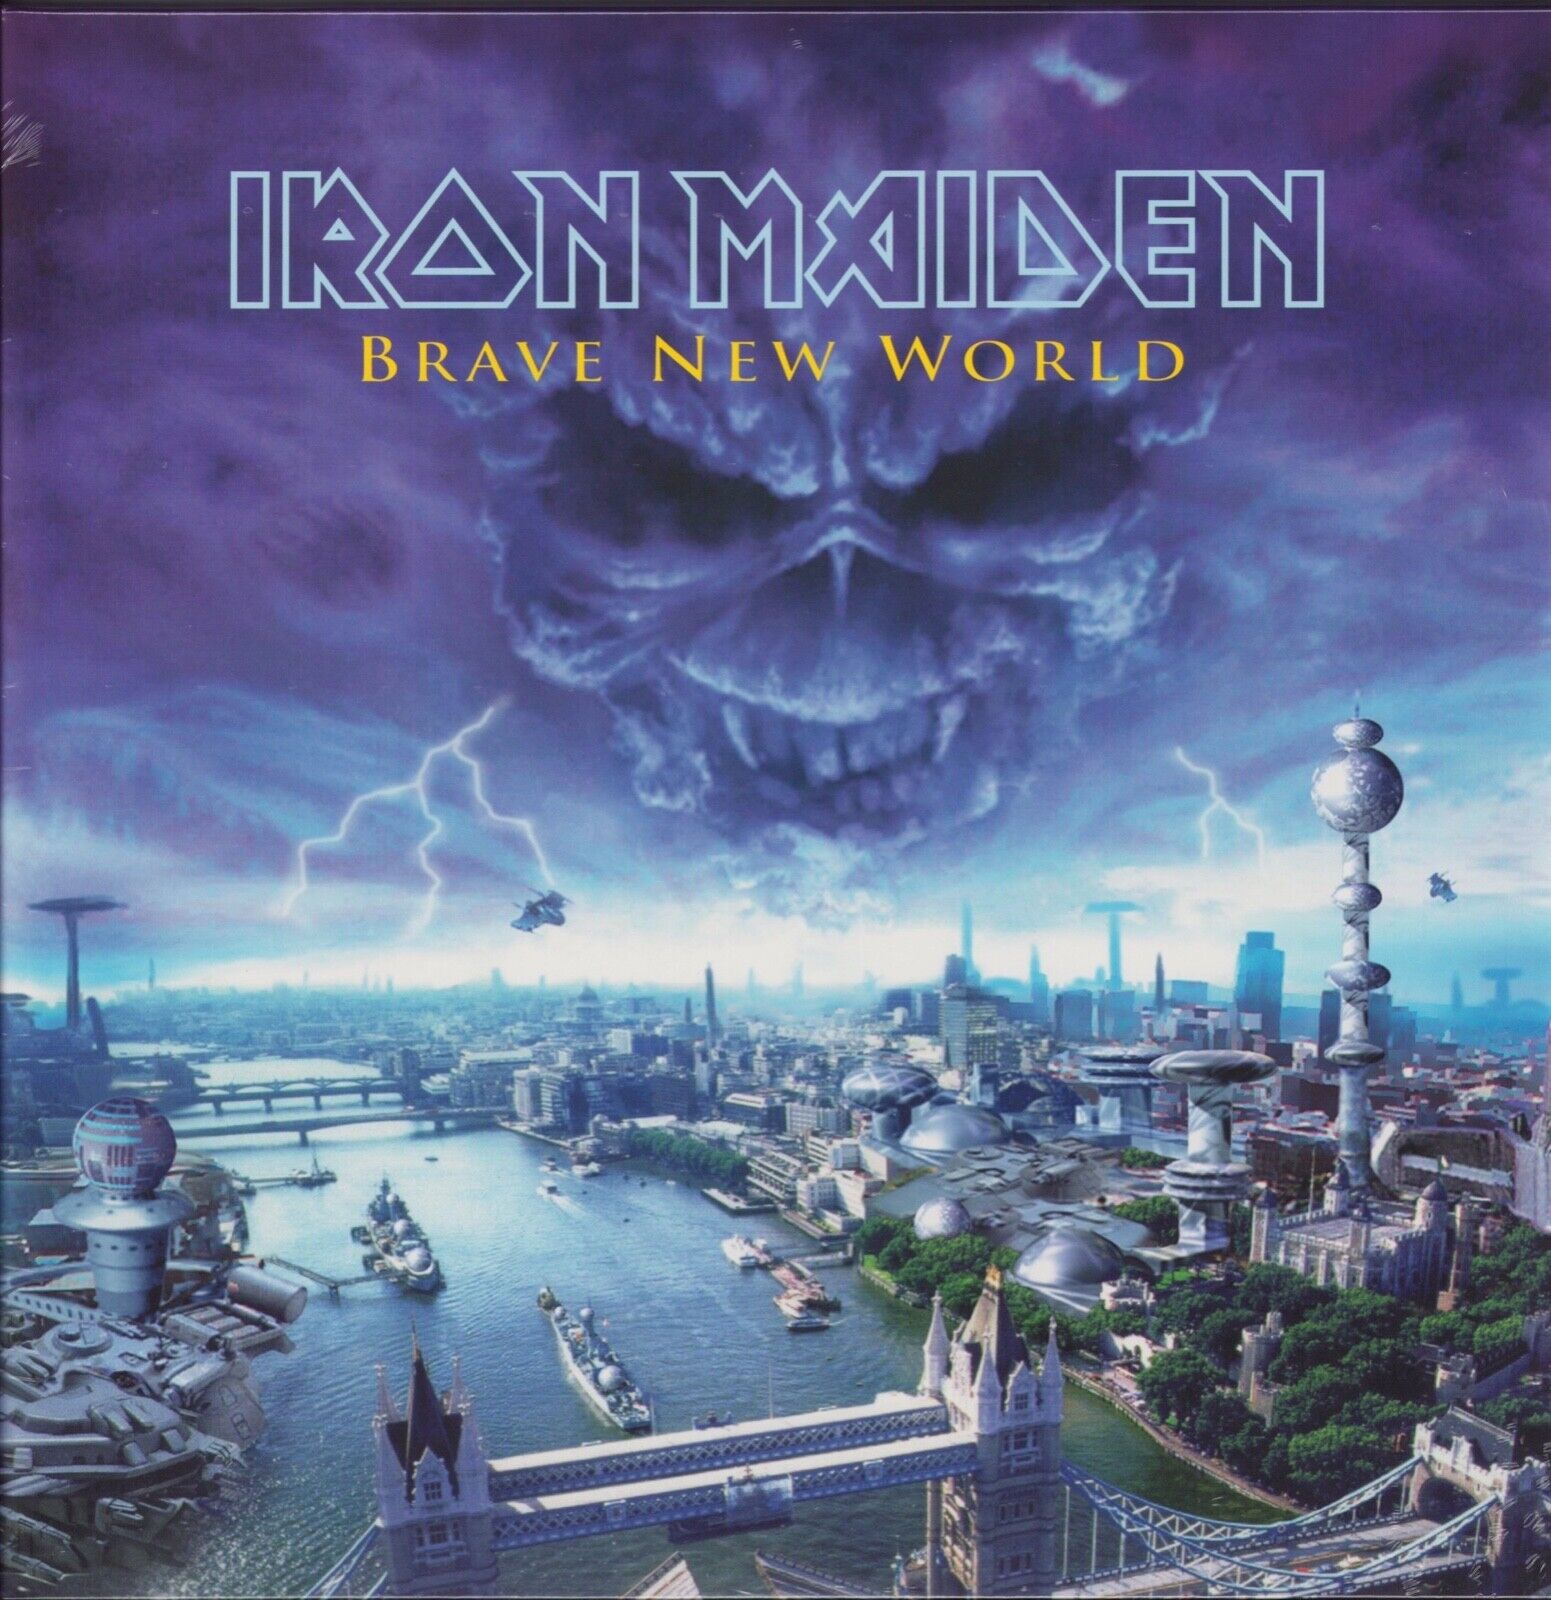 Iron Maiden ‎- Brave New World Vinyl 2LP - 180 g - EU 2017